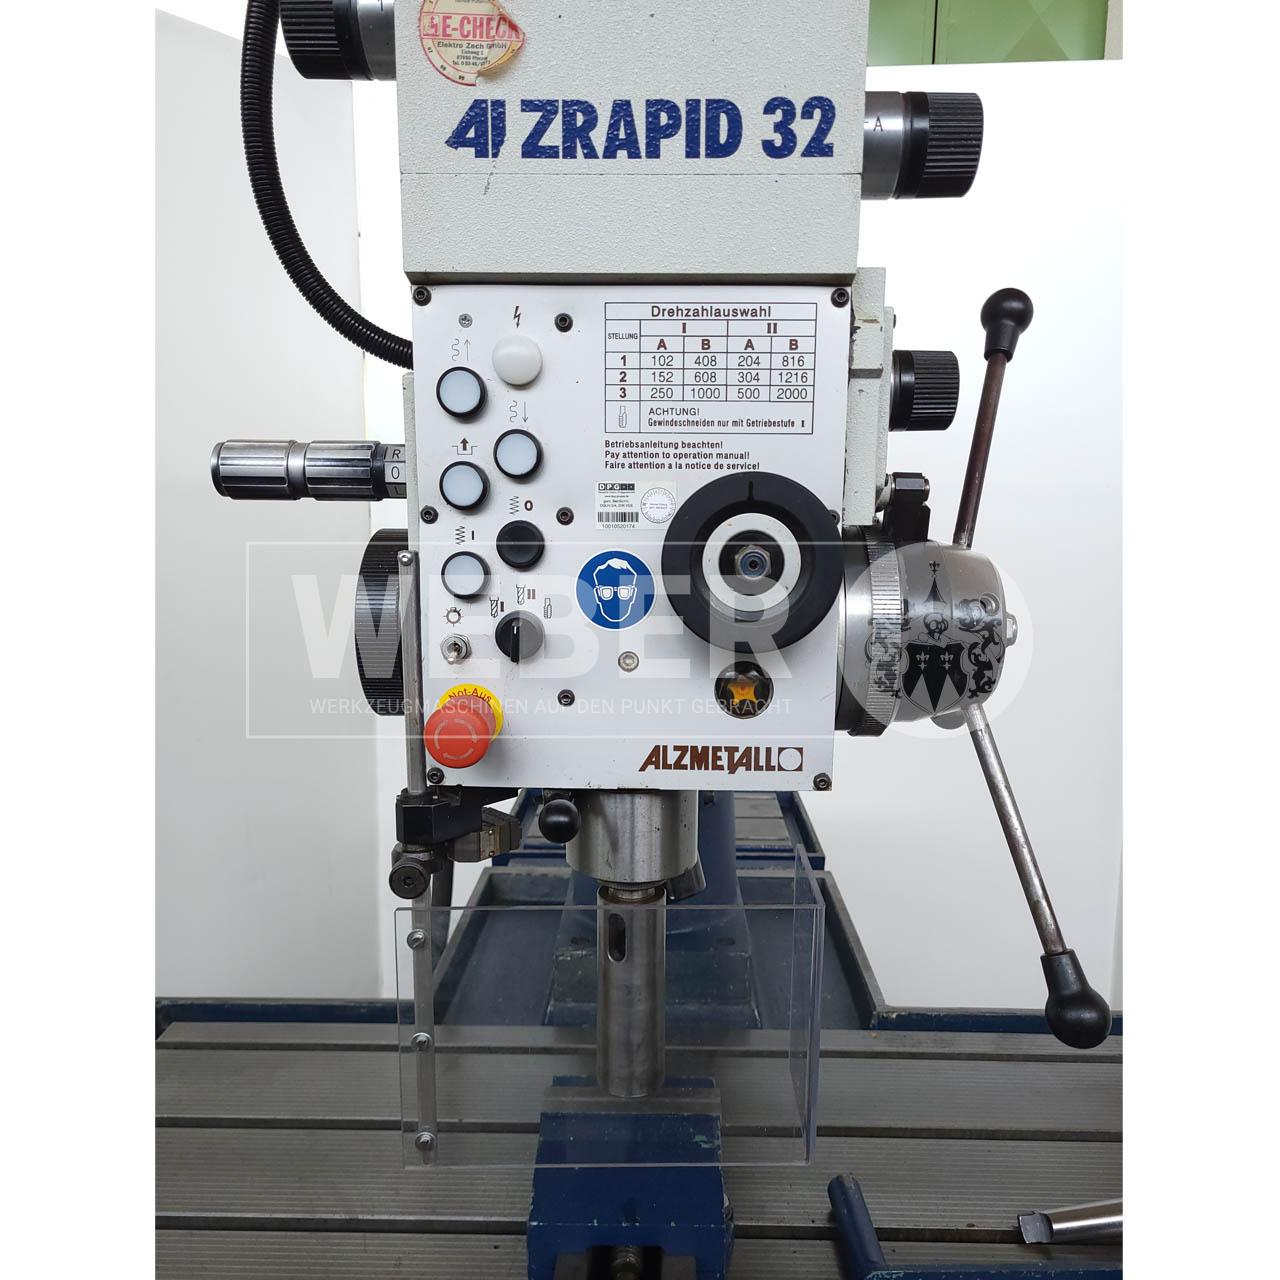 Alzmetall Alzrapid 32 Schnellradial-Getriebebohrmaschine